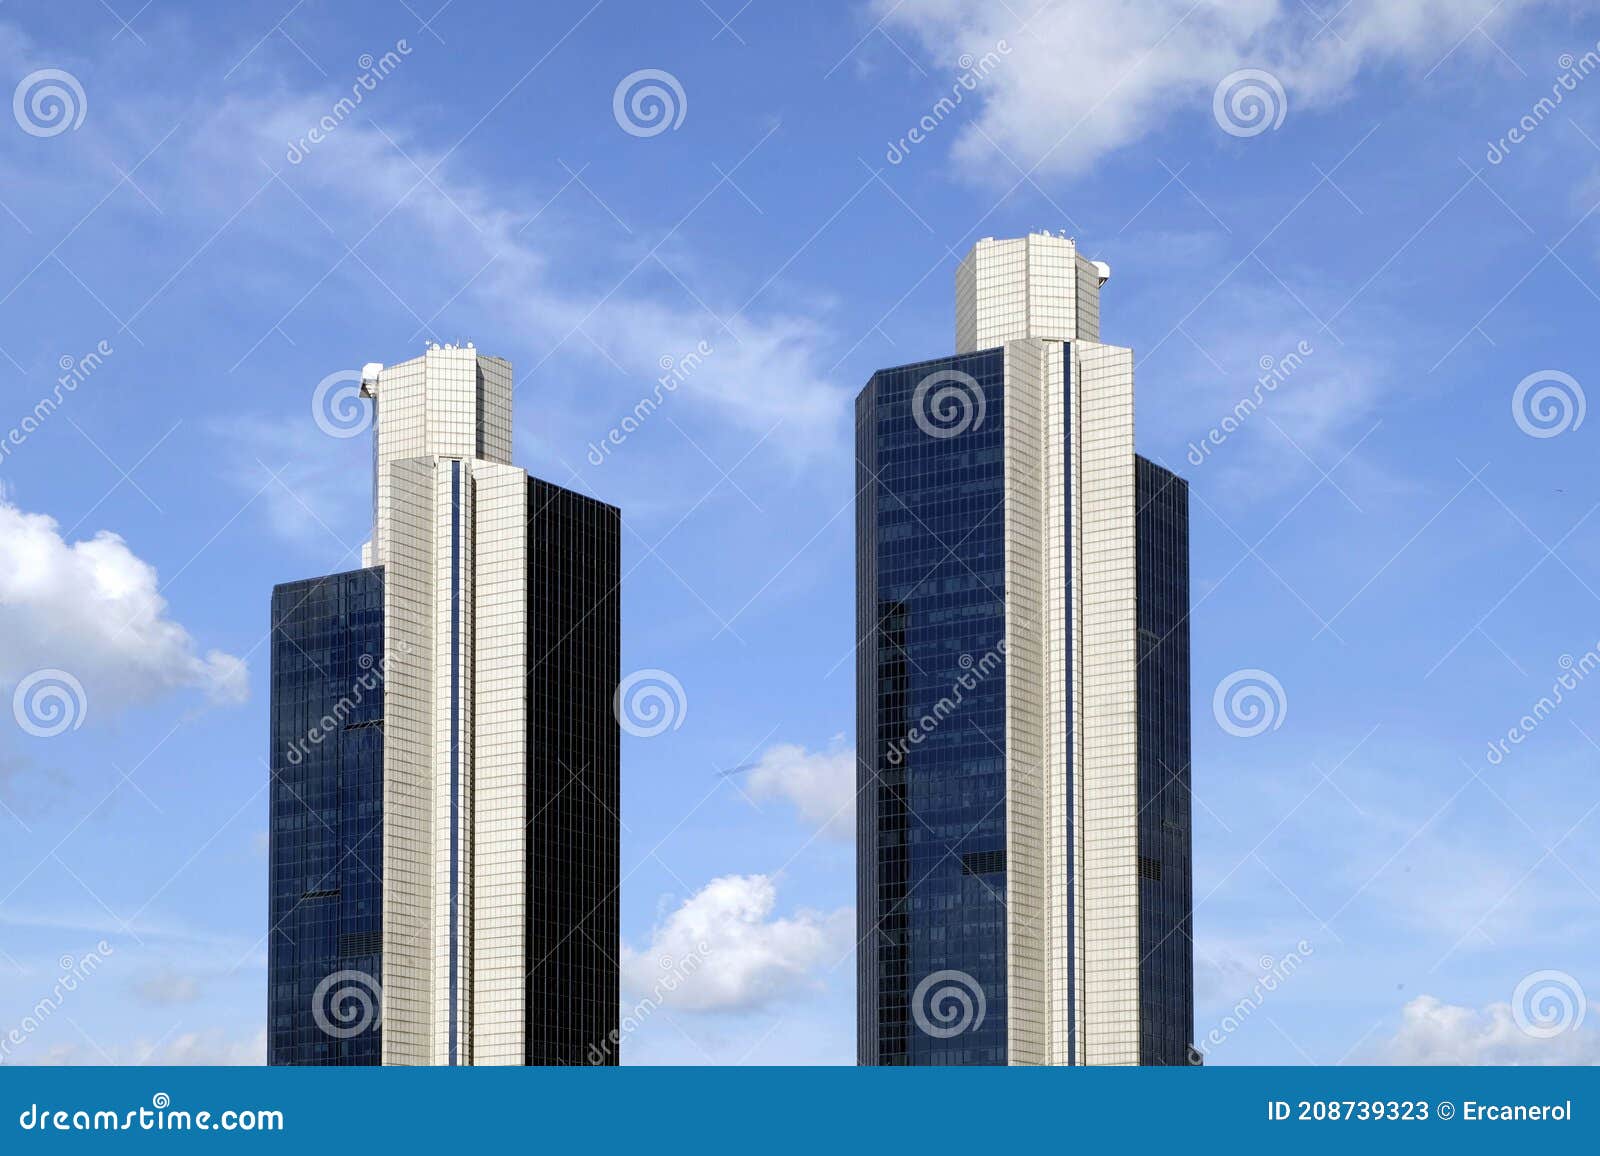 two skyscrapper blocks in open sky